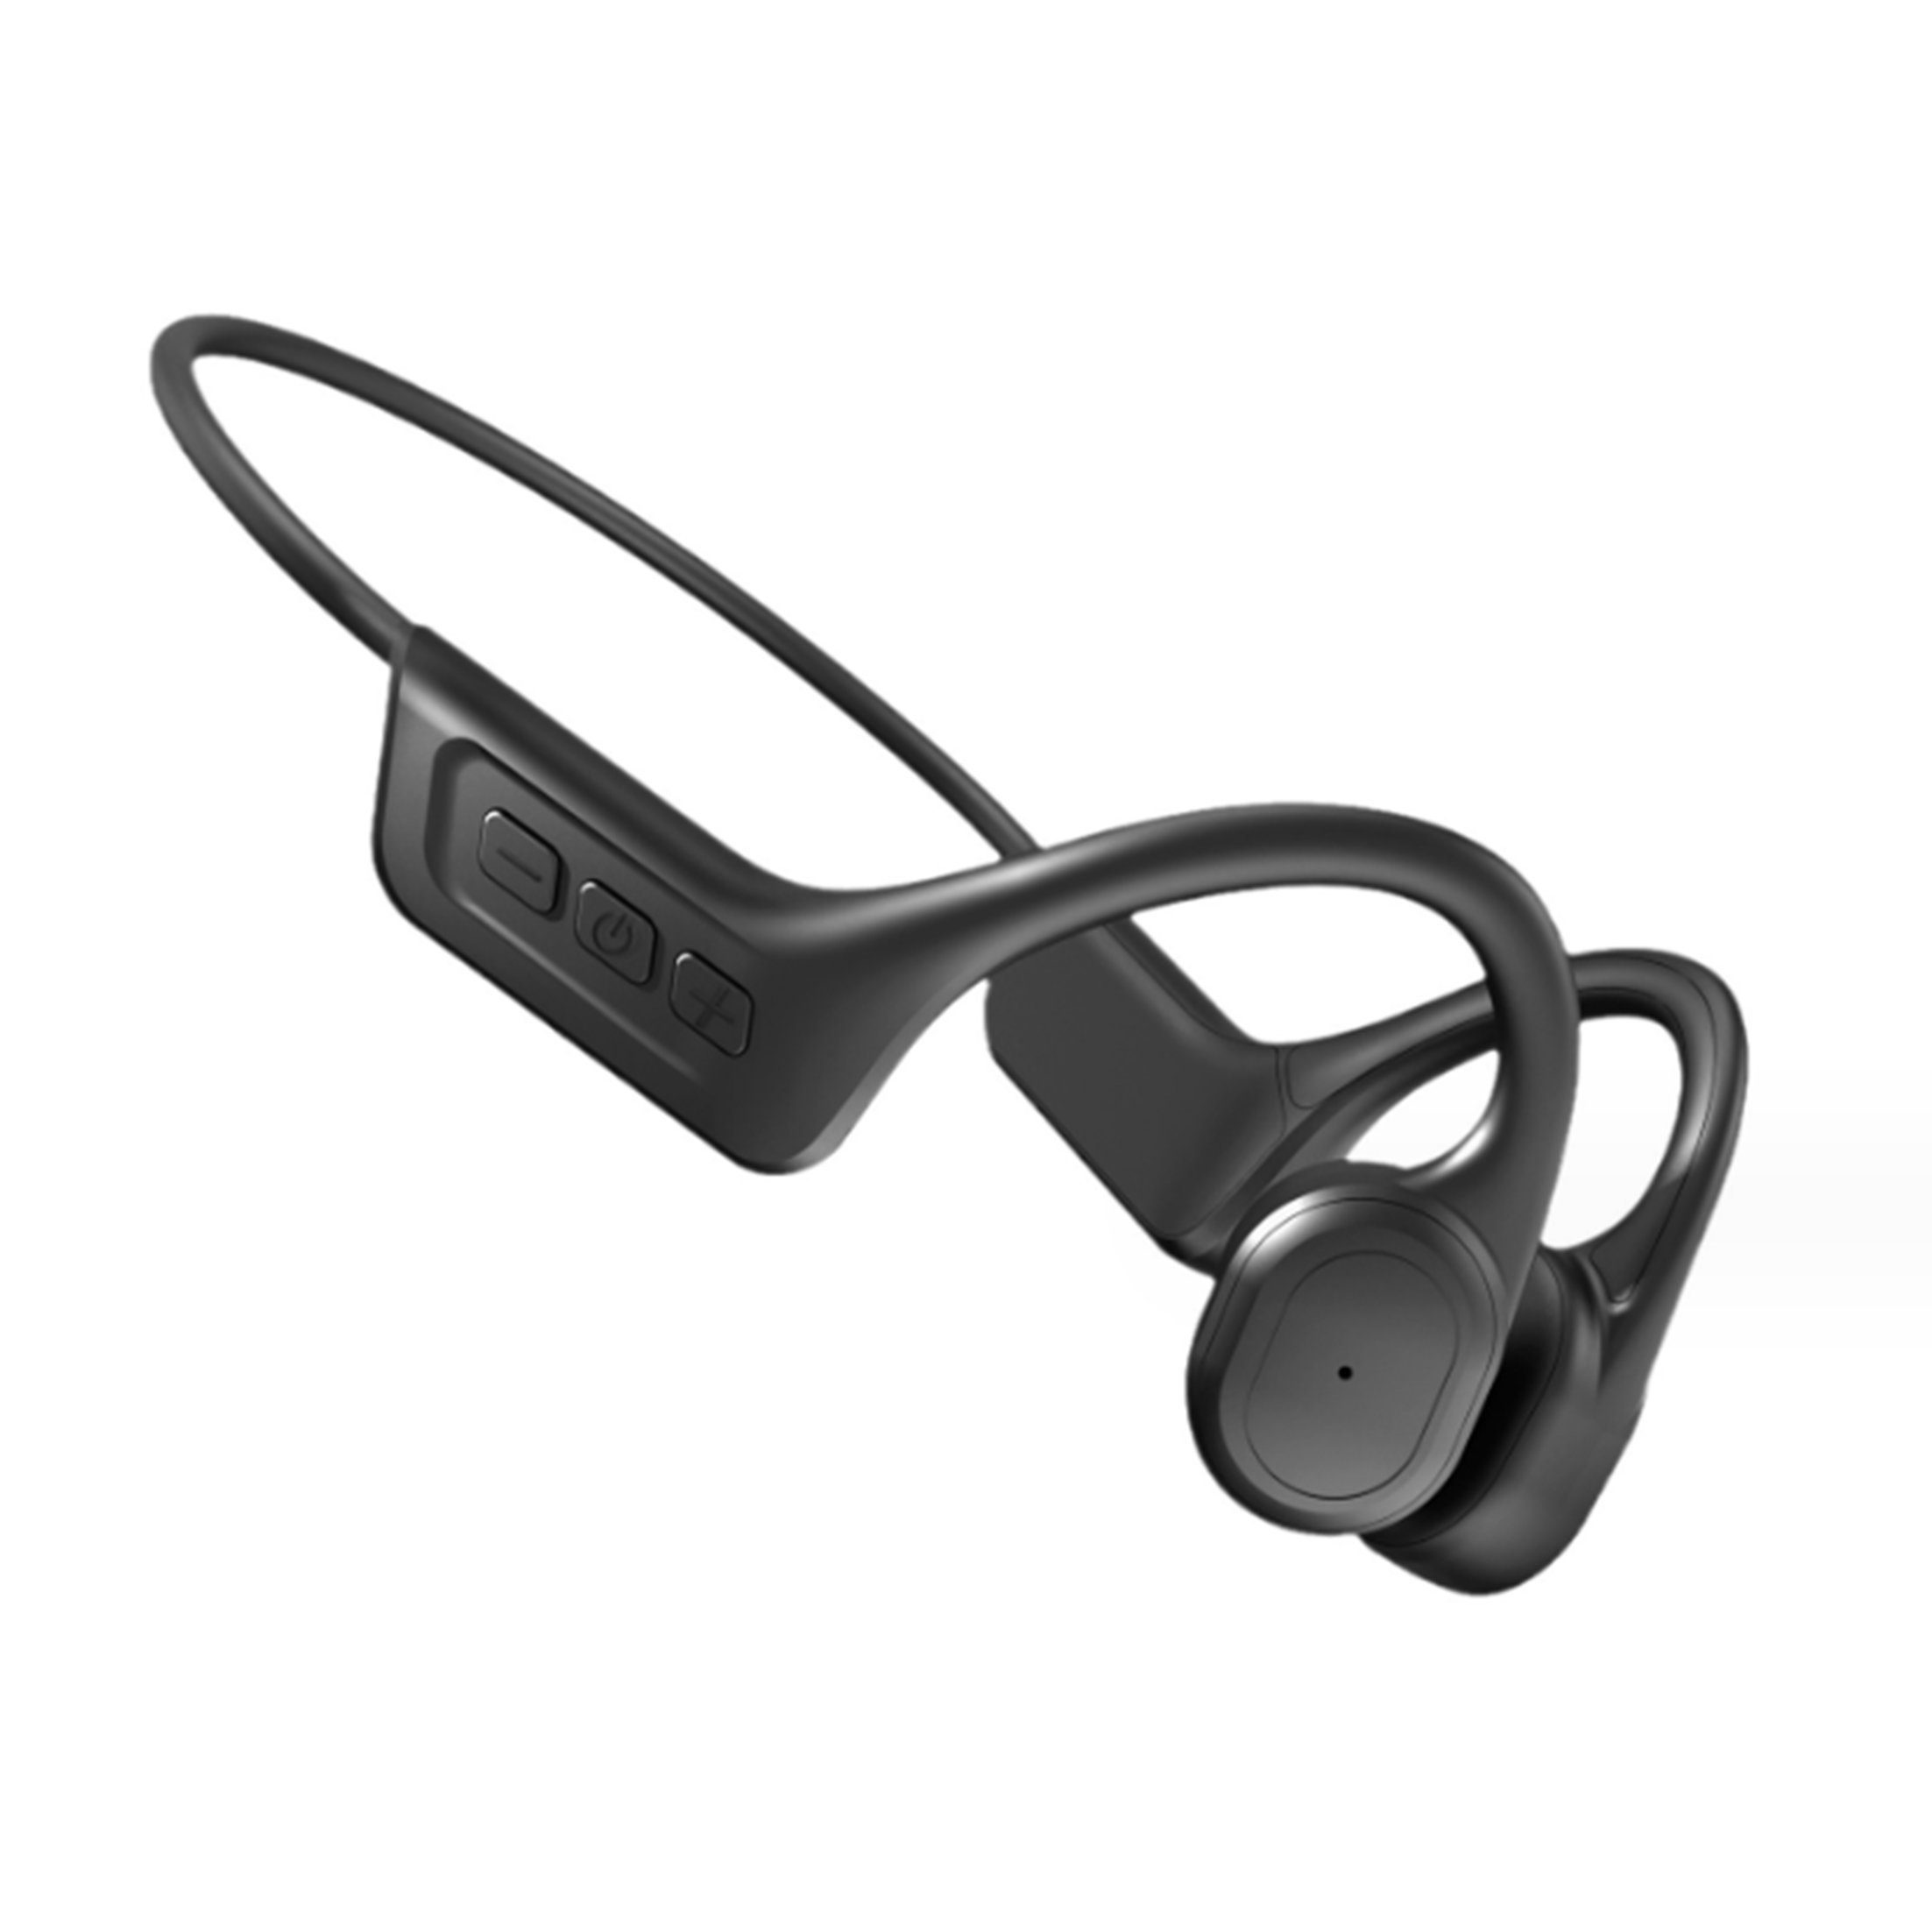 KINSI Knochenleitungskopfhörer,Schwimmkopfhörer,wasserdicht,mit 32G Bluetooth-Kopfhörer Speicher